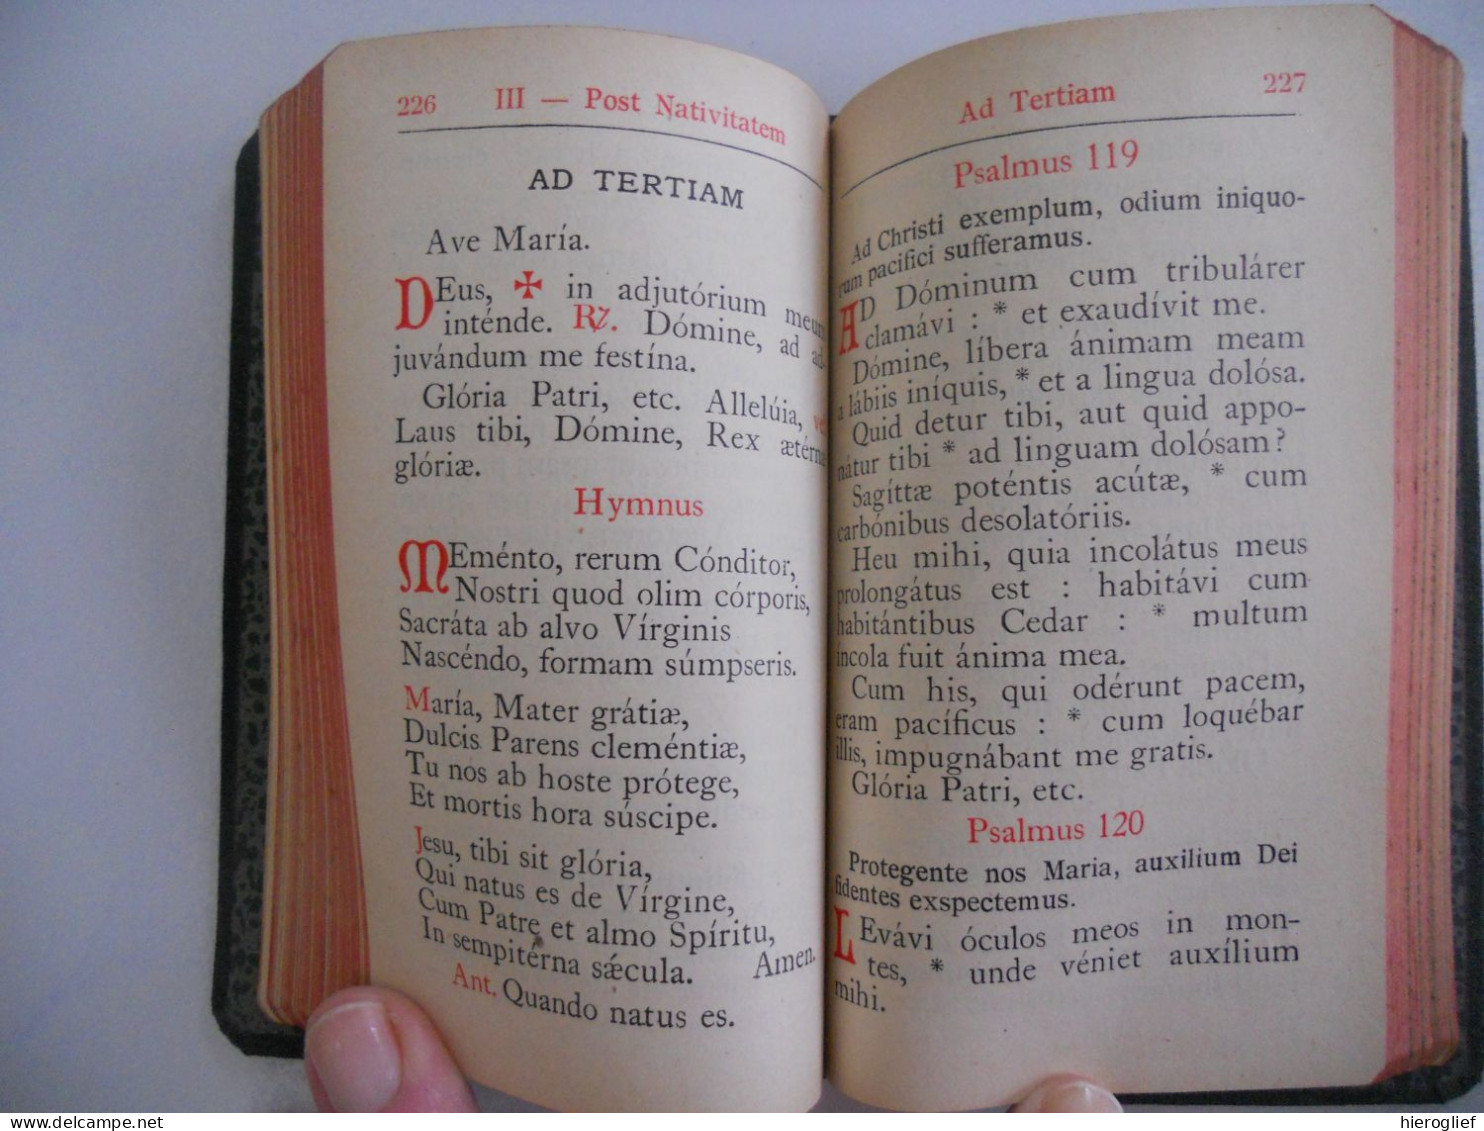 Officium Parvum Beatae Mariae Virginis Pro Tribus Anni Temporibus Juxta Editionem Typicam Breviarii Romani 1934 - Oude Boeken